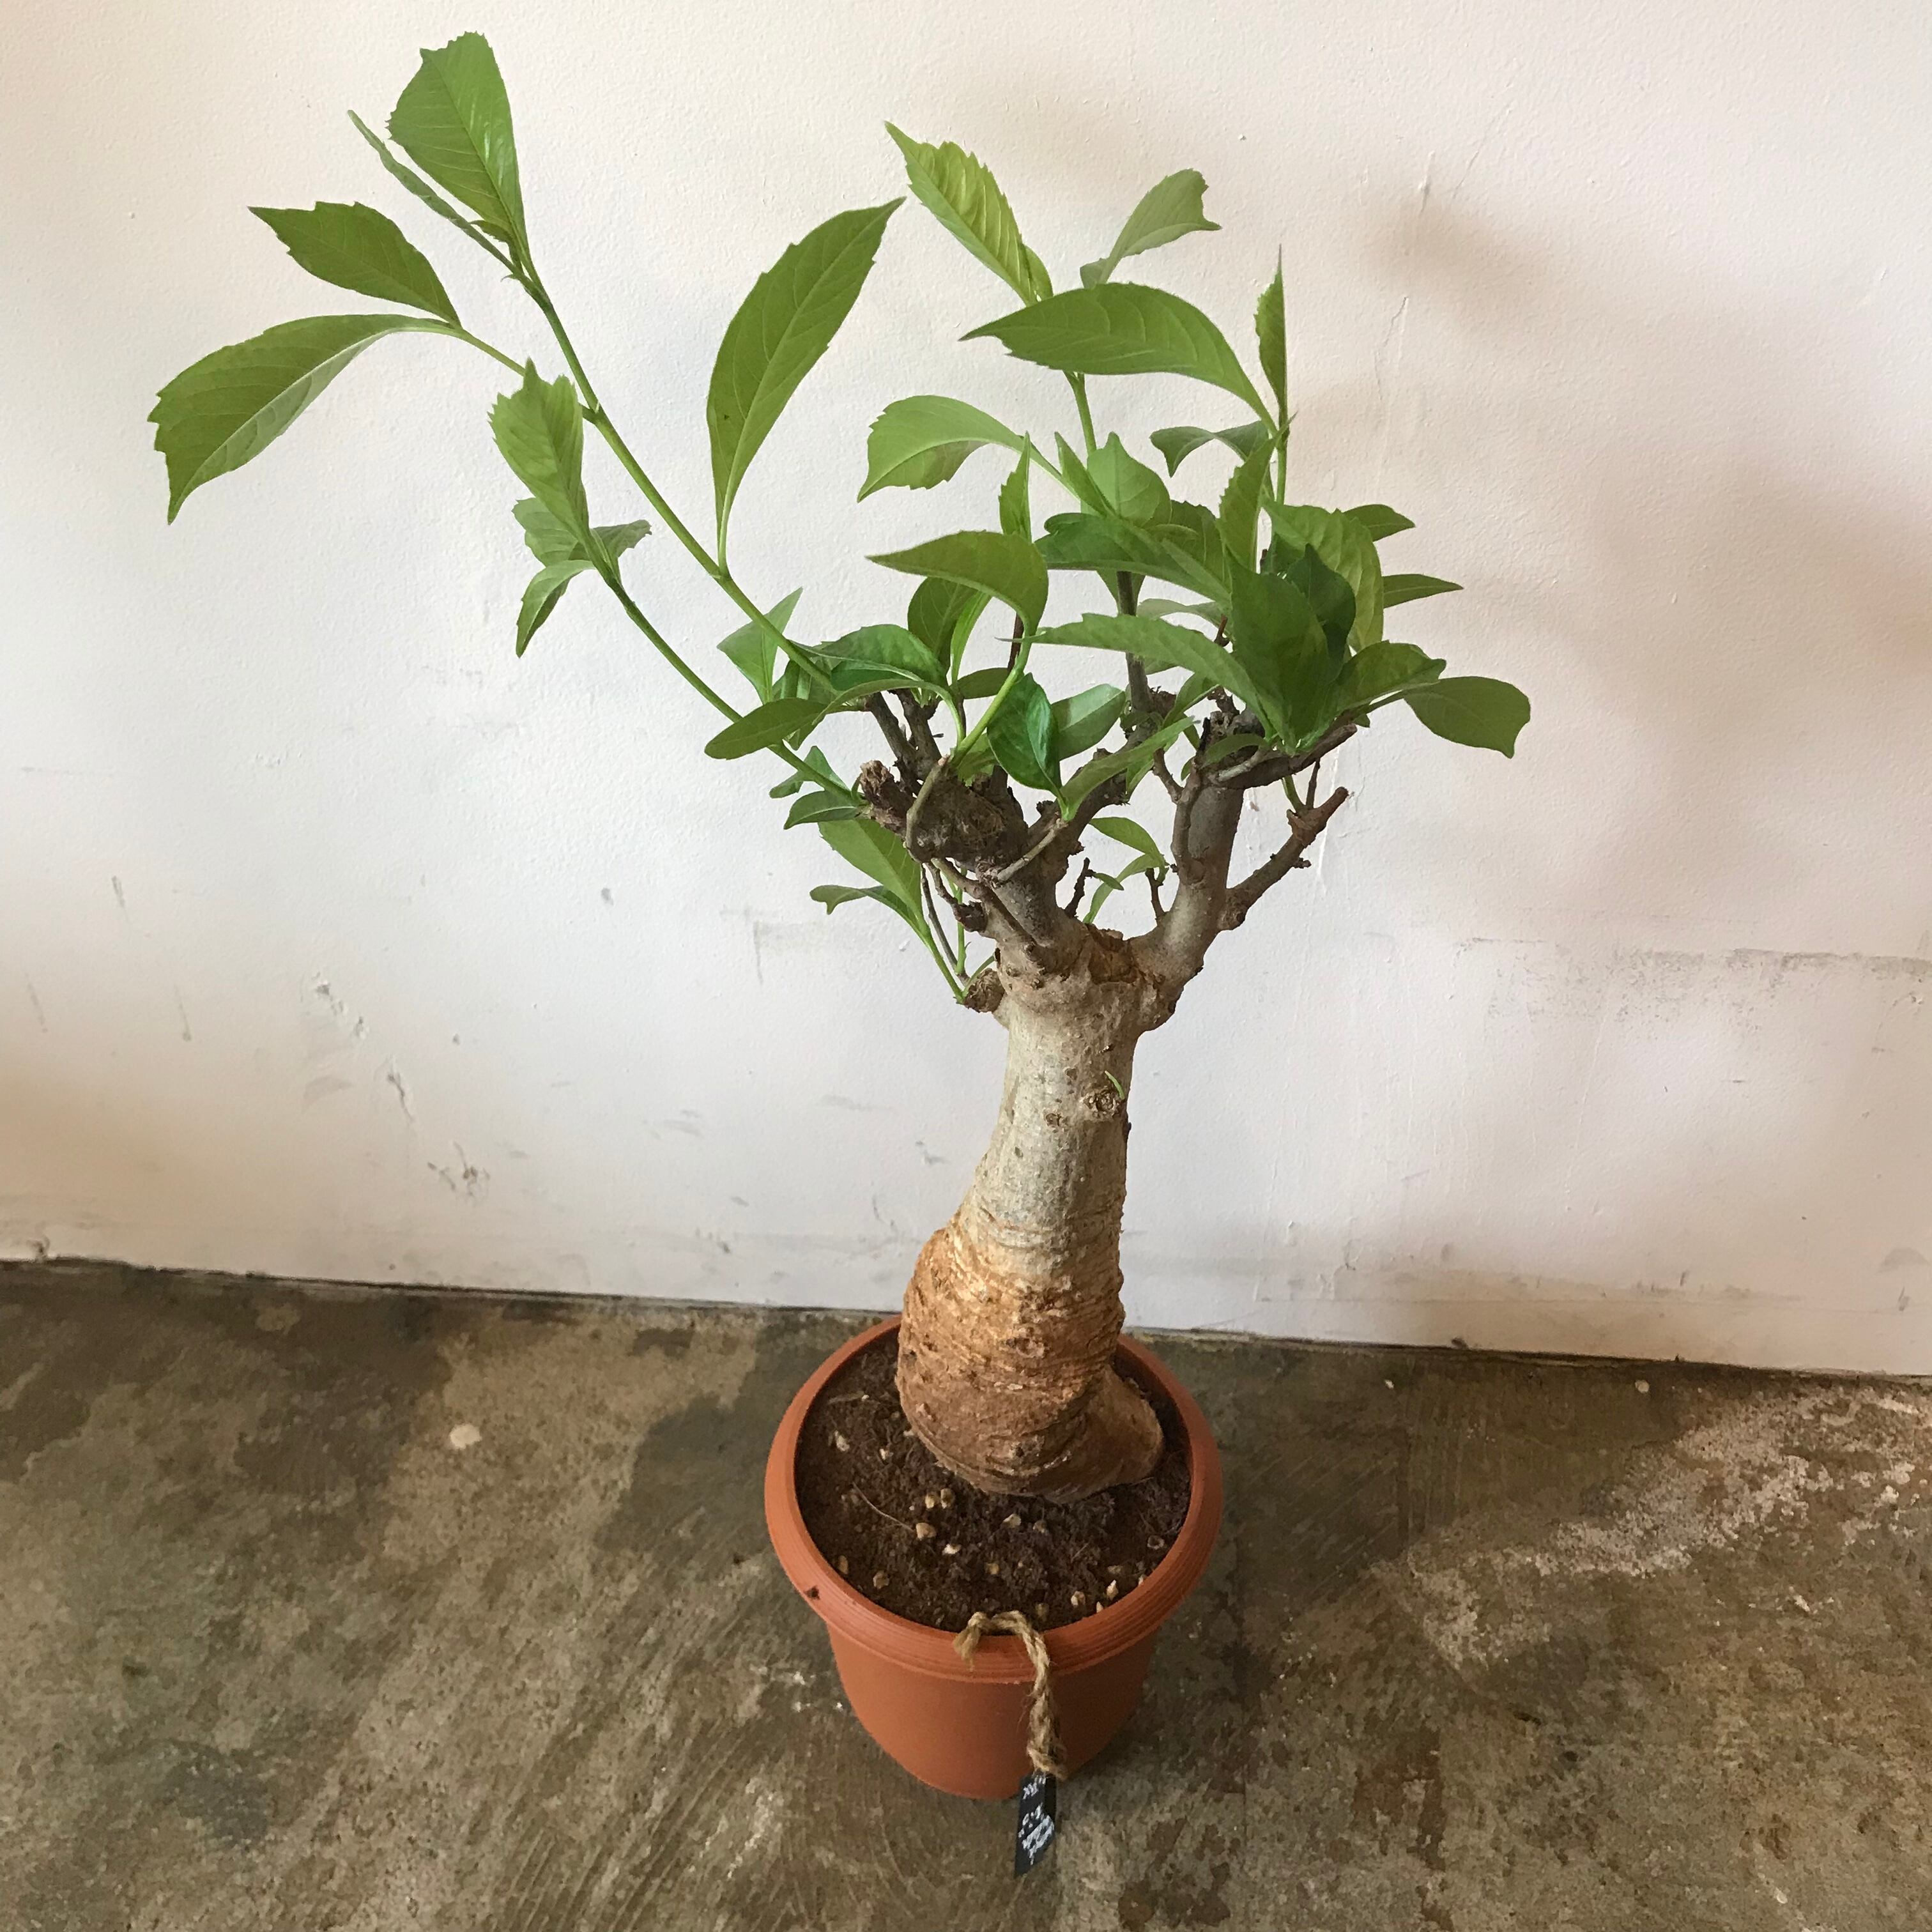 バオバブ Adansonia digitata 鉢のまま梱包発送